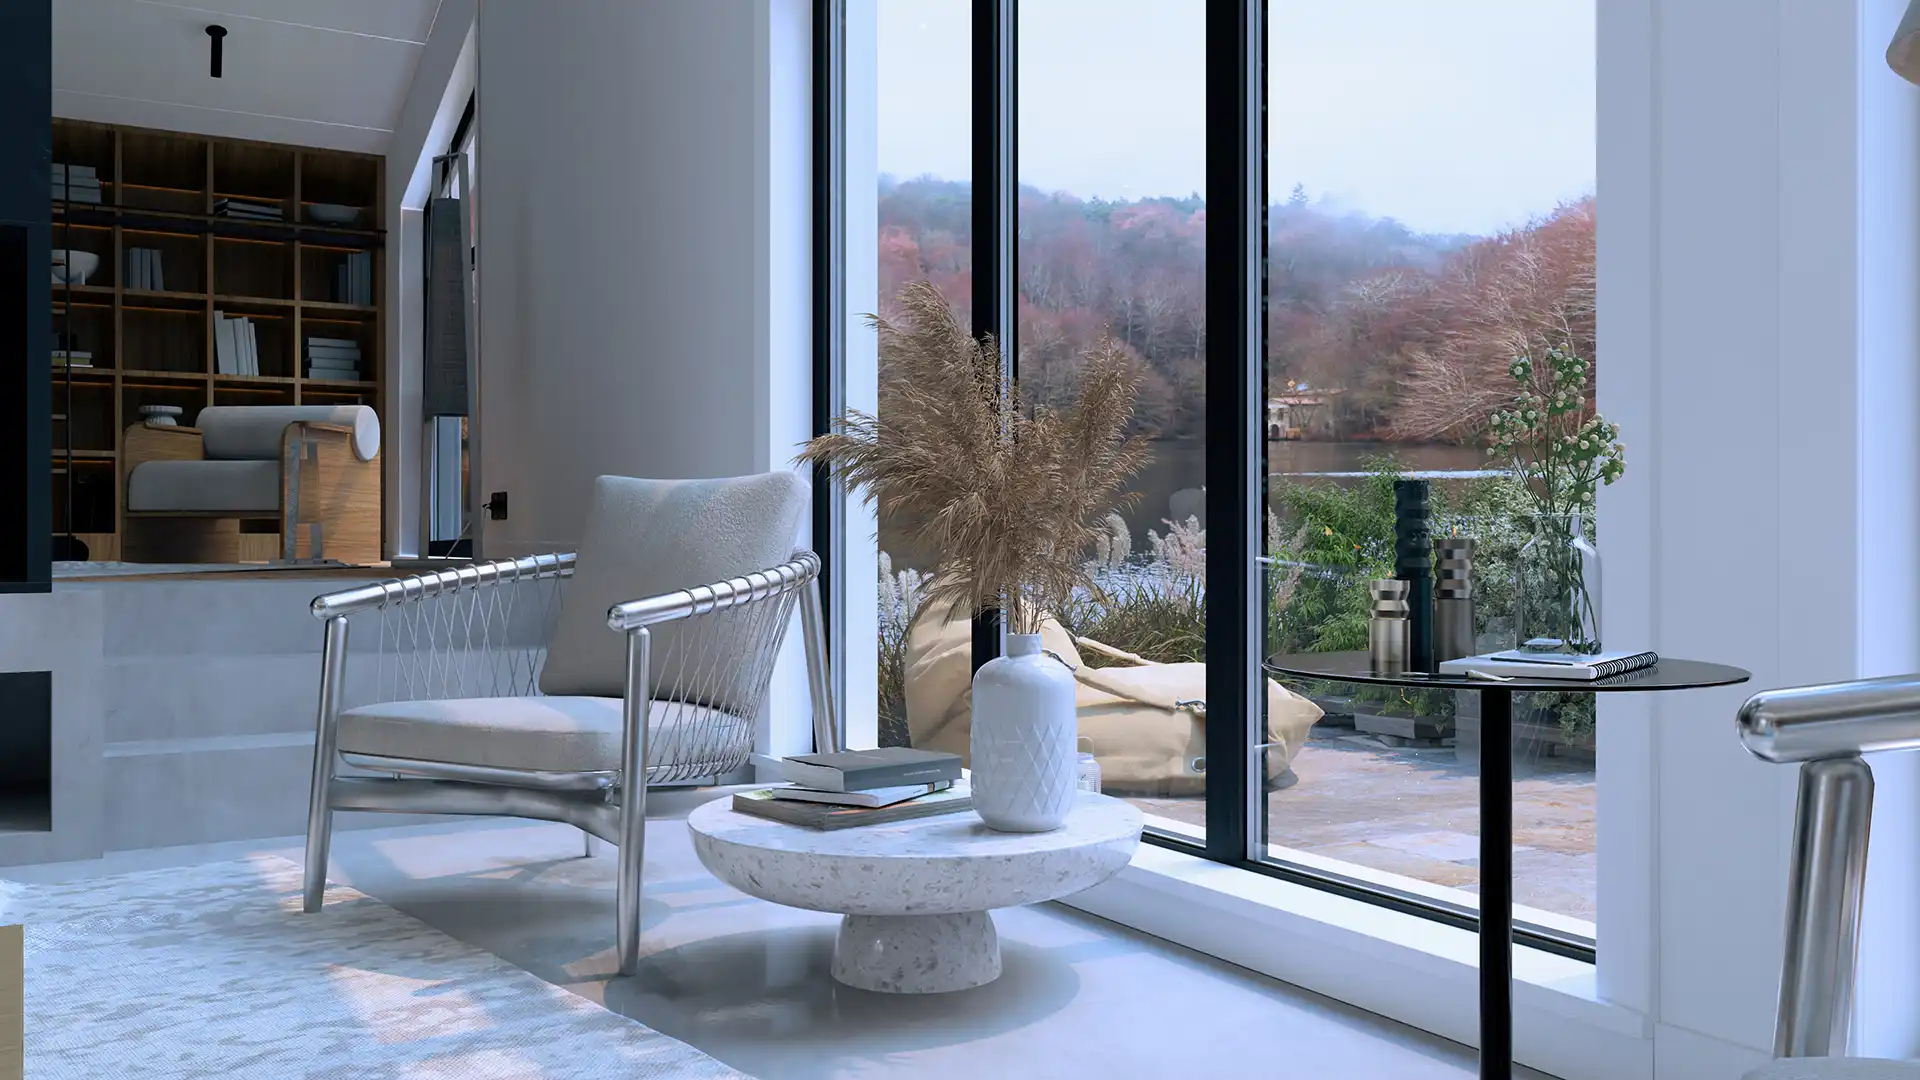 Architectes-images-3d-rendus-perspective-interieure-l4m-projet-harmonie-salon-vue-terrasse